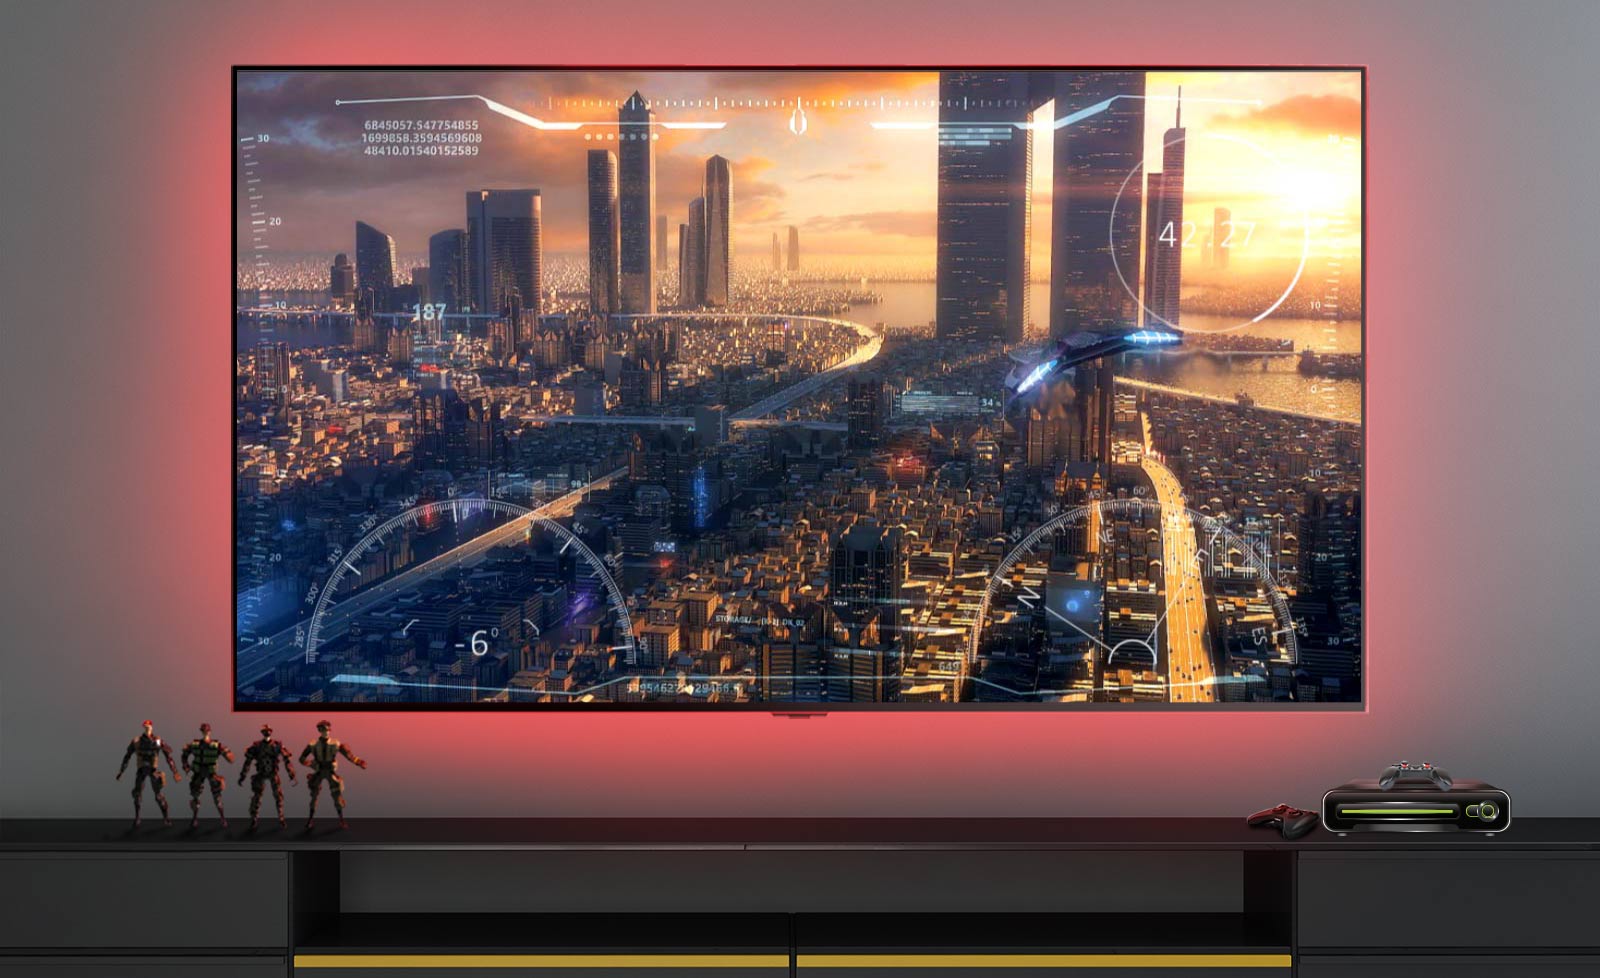 أحد مشاهد ألعاب الفيديو يوضح سفينة فضاء تحلق فوق إحدى المدن على شاشة التلفزيون (تشغيل الفيديو).